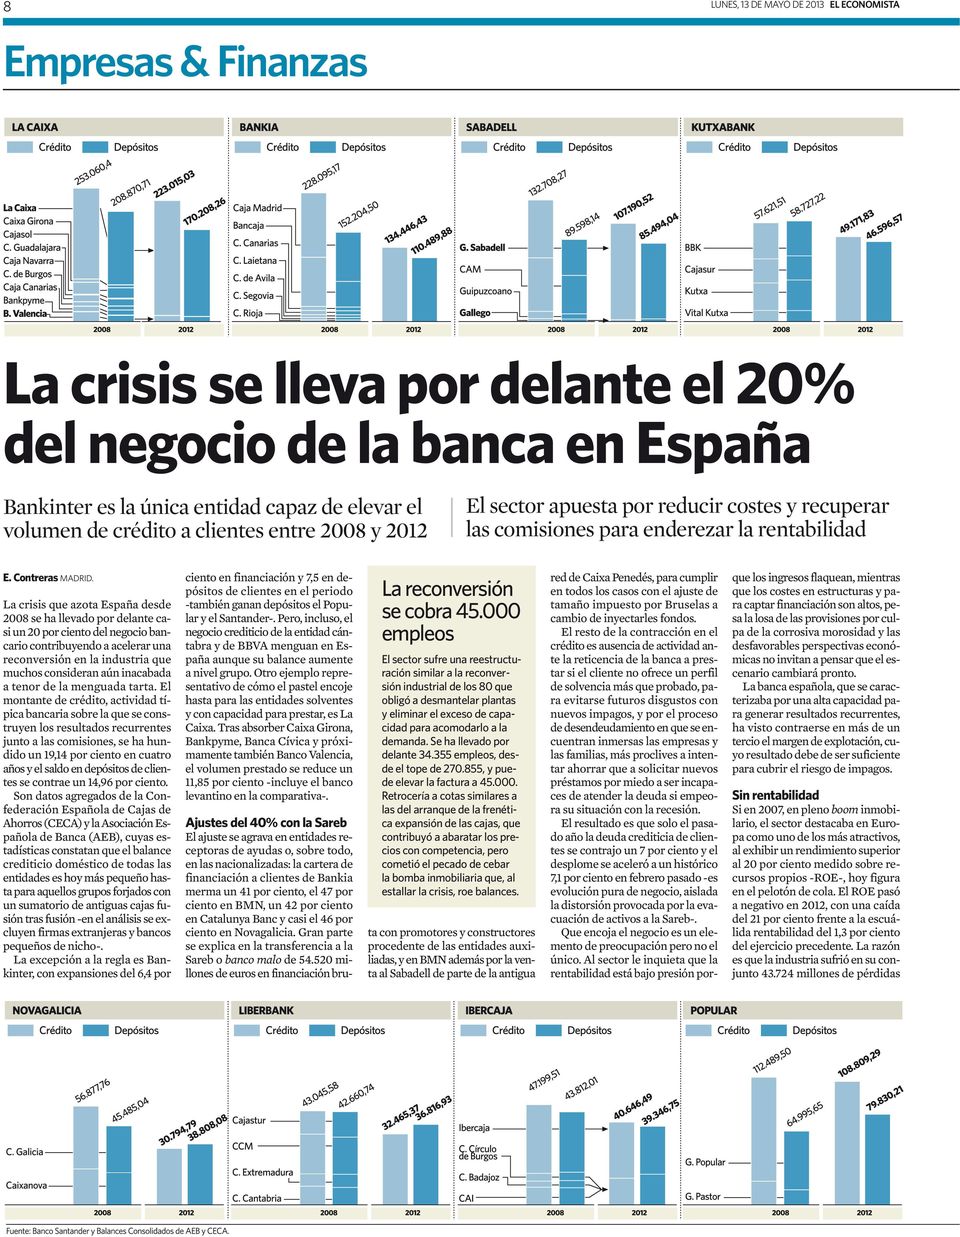 La crisis que azota España desde 2008 se ha llevado por delante casi un 20 por ciento del negocio bancario contribuyendo a acelerar una reconversión en la industria que muchos consideran aún